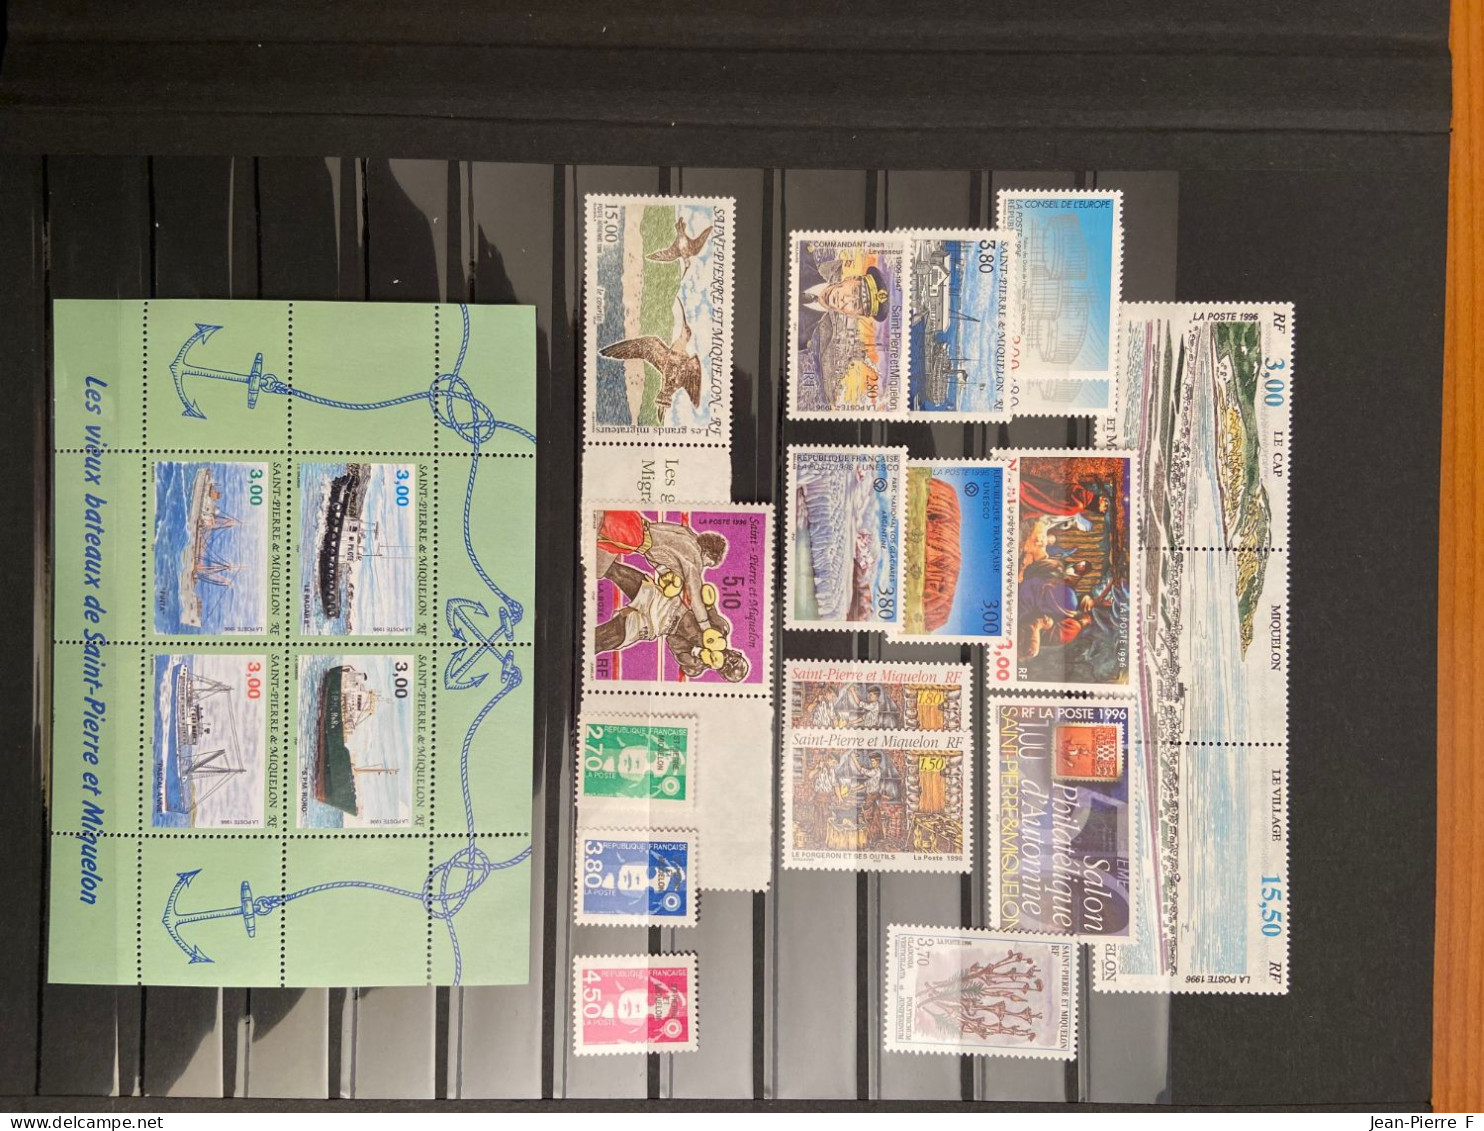 Lot de 500 timbres neufs de Saint Pierre et Miquelon – 1986 à 2003 incluse